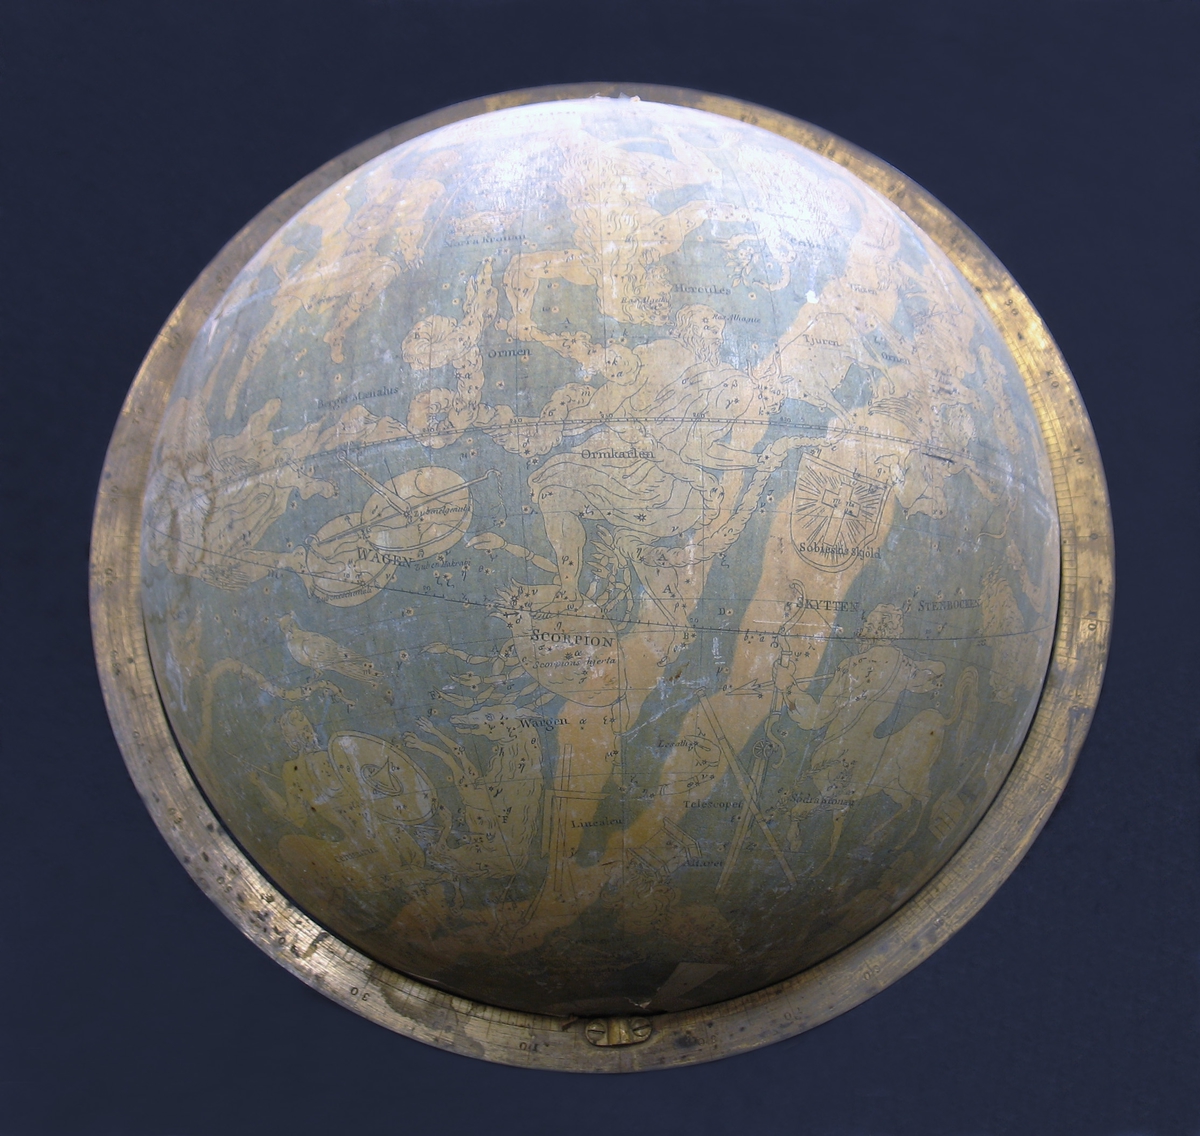 En himmelsglob med stjärnhimlen med dess stjärntecken. Himmelsgloben saknar ställning. Globen är från år 1824. Illustrationerna på globen föreställer bland annat stjärnor och stjärnbilder såsom Jungfrun, Vattumannen, Örnen, Tjuren, Draken etcetera.